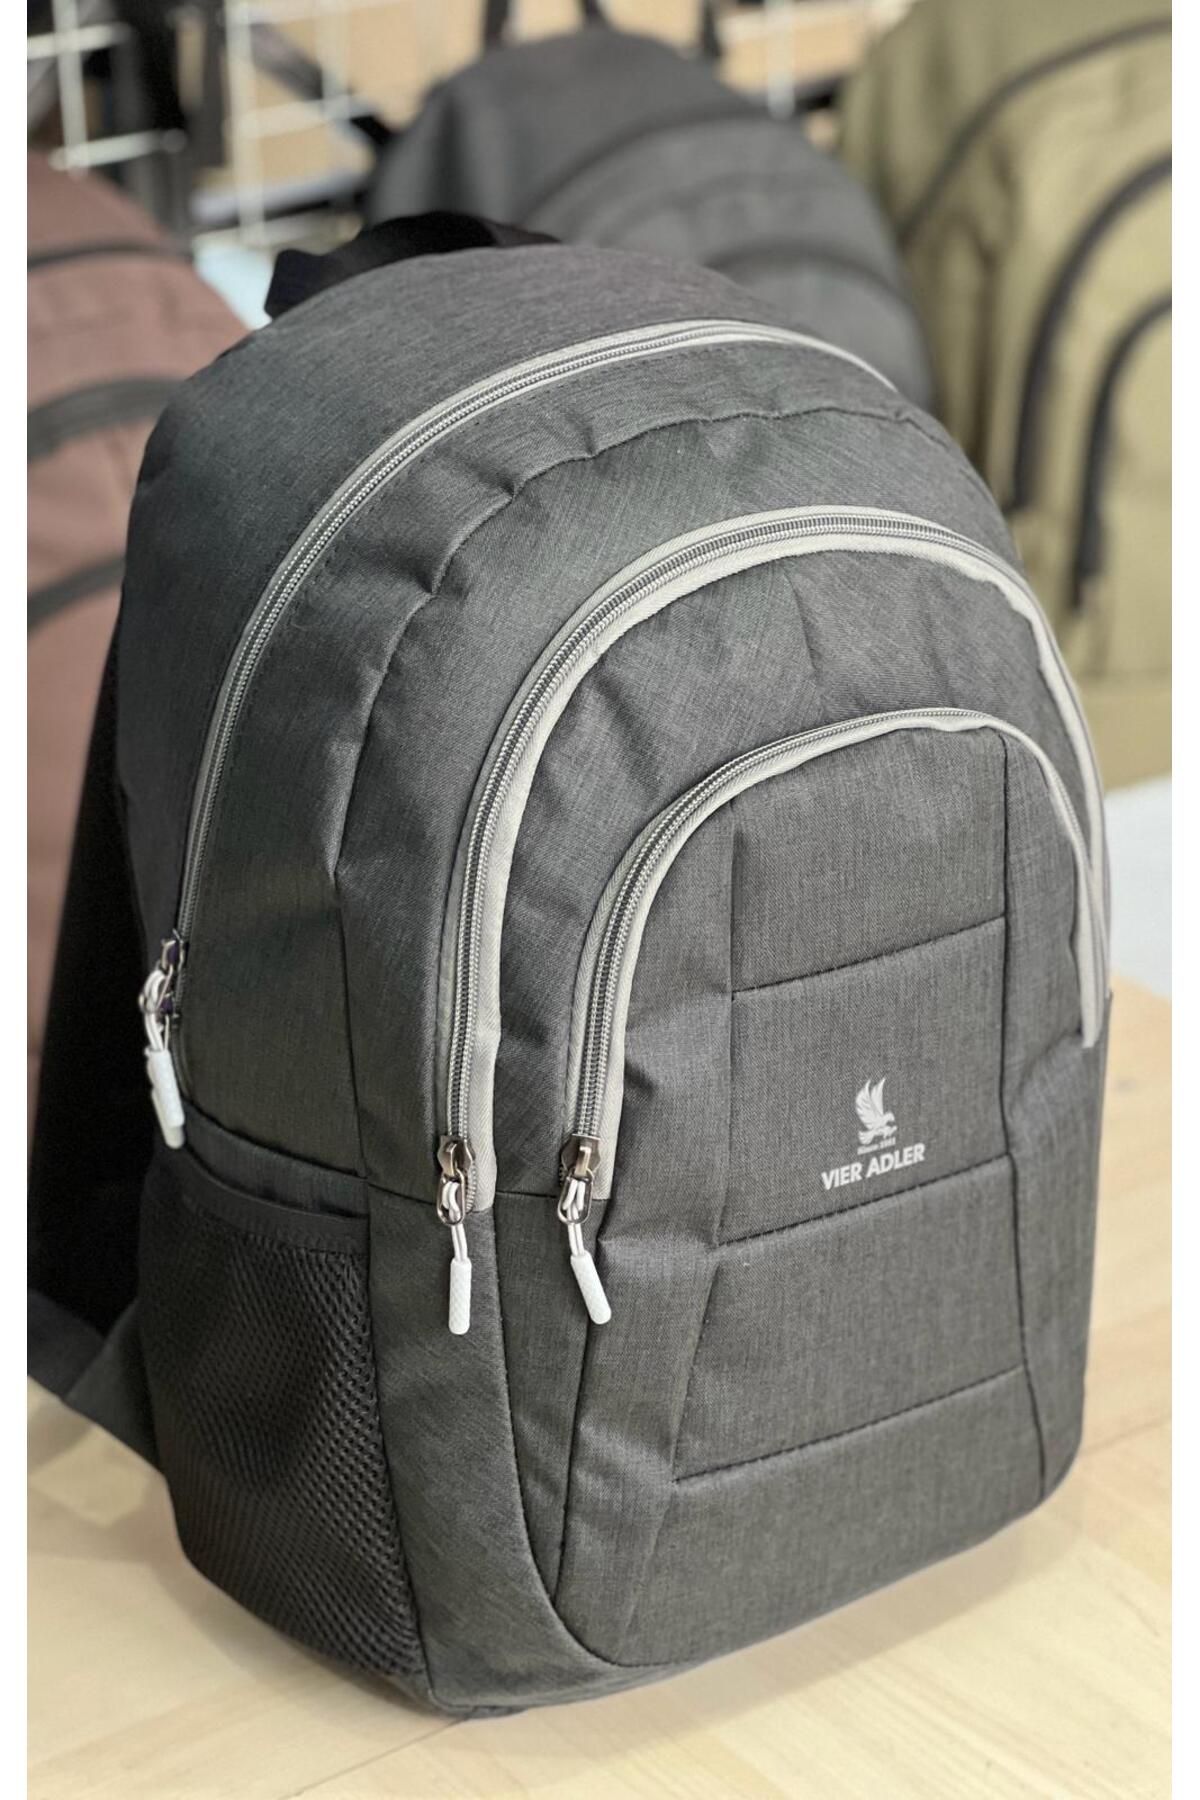 Vier Adler Laptop Bölmeli Sırt çantası Okul çantası Günlük çanta